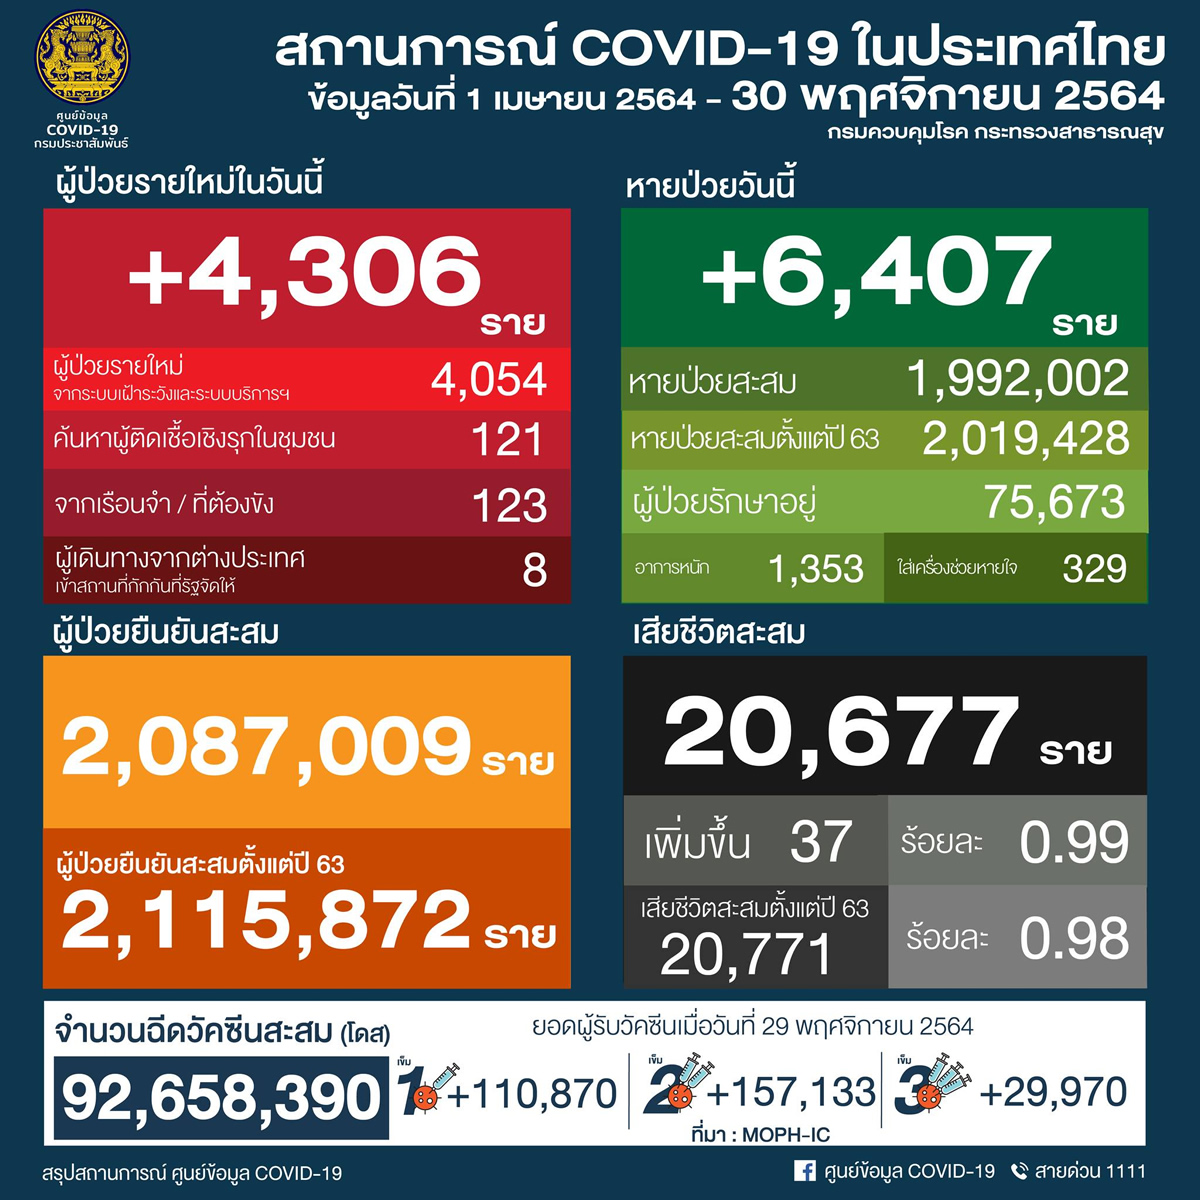 タイ 4,306人陽性 37人死亡／バンコク 740人陽性 6人死亡／チェンマイ 167人陽性［2021年11月30日発表］